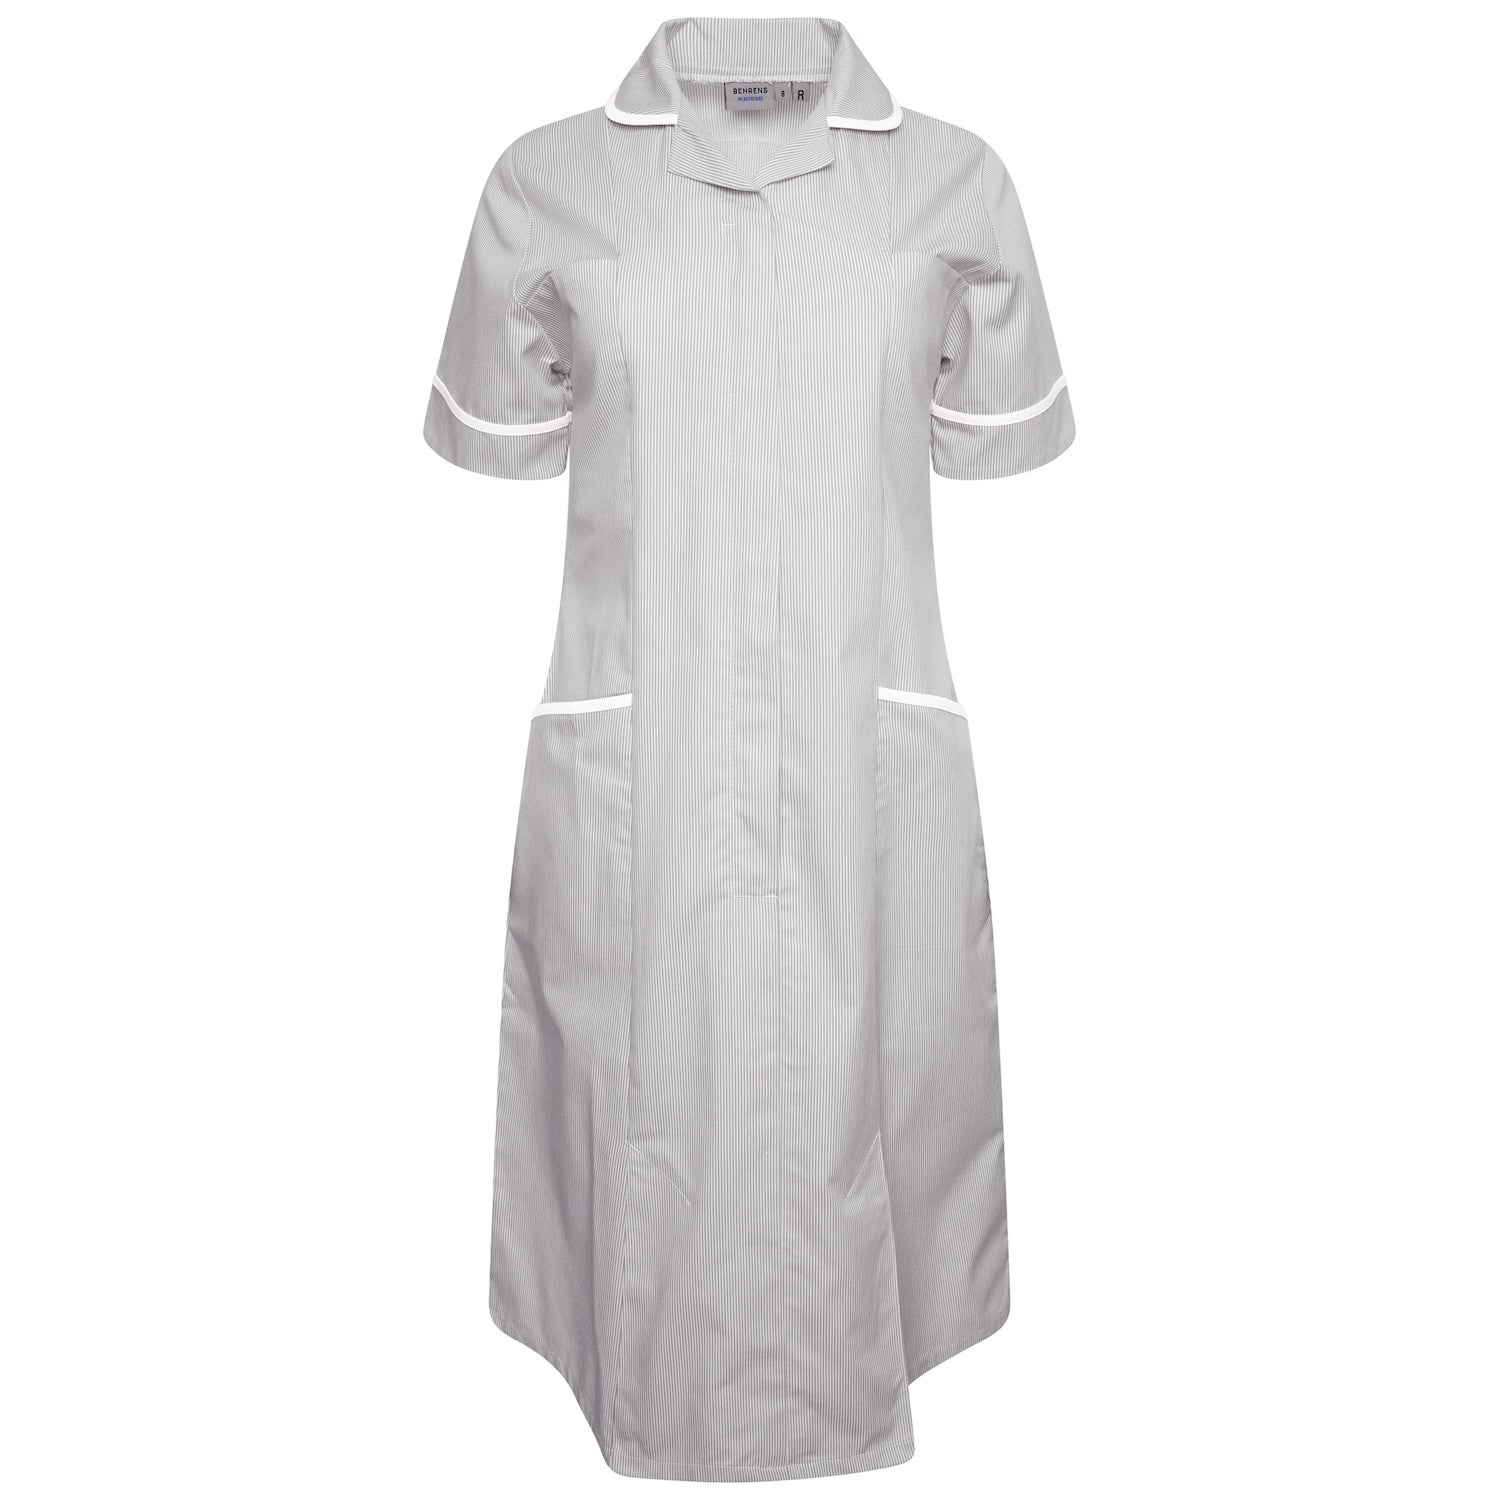 Ladies Healthcare Dress | Round Collar | Grey White Stripe/White Trim